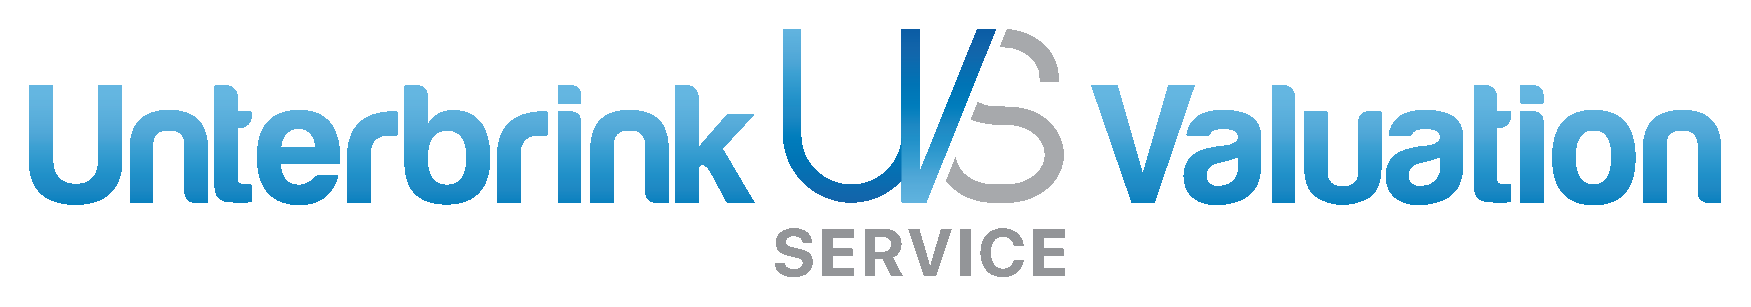 UVS logo